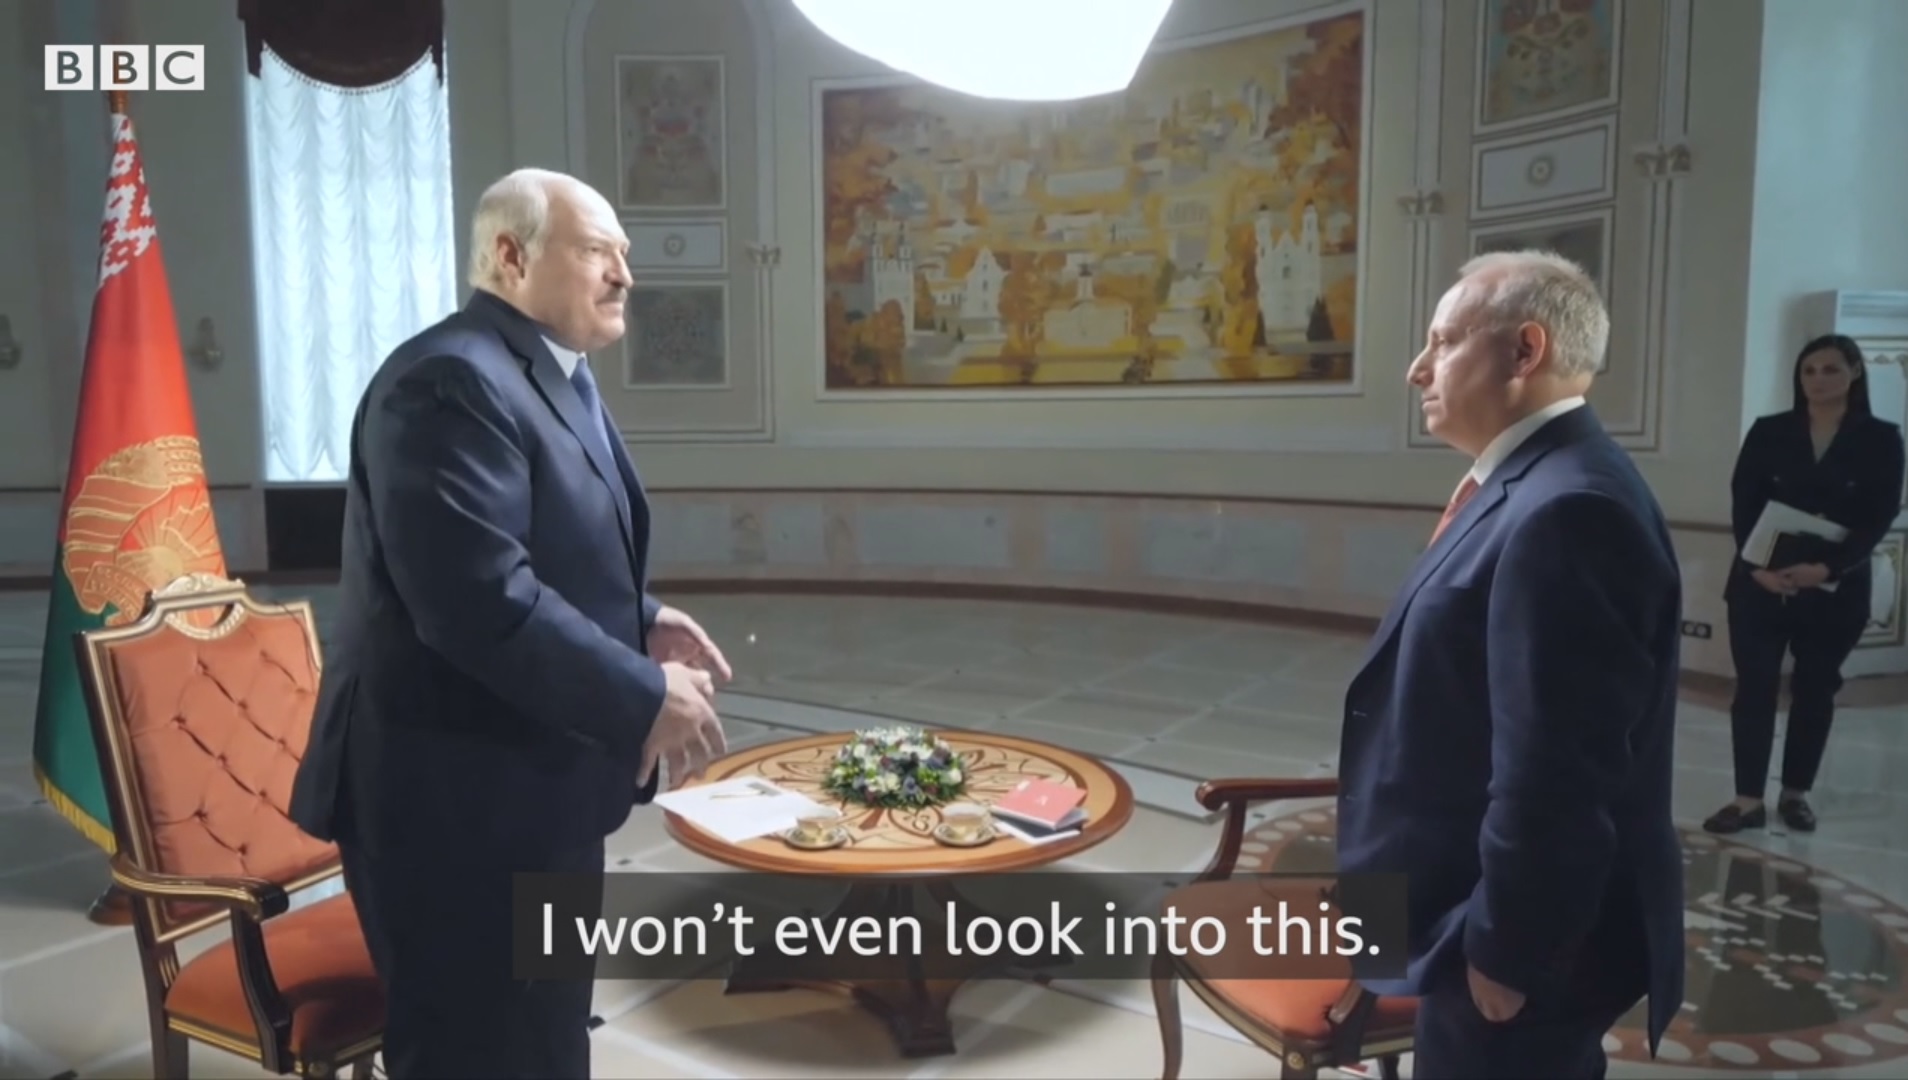 “Злится, но не врёт”: поведенческий аналитик об интервью Лукашенко BBC